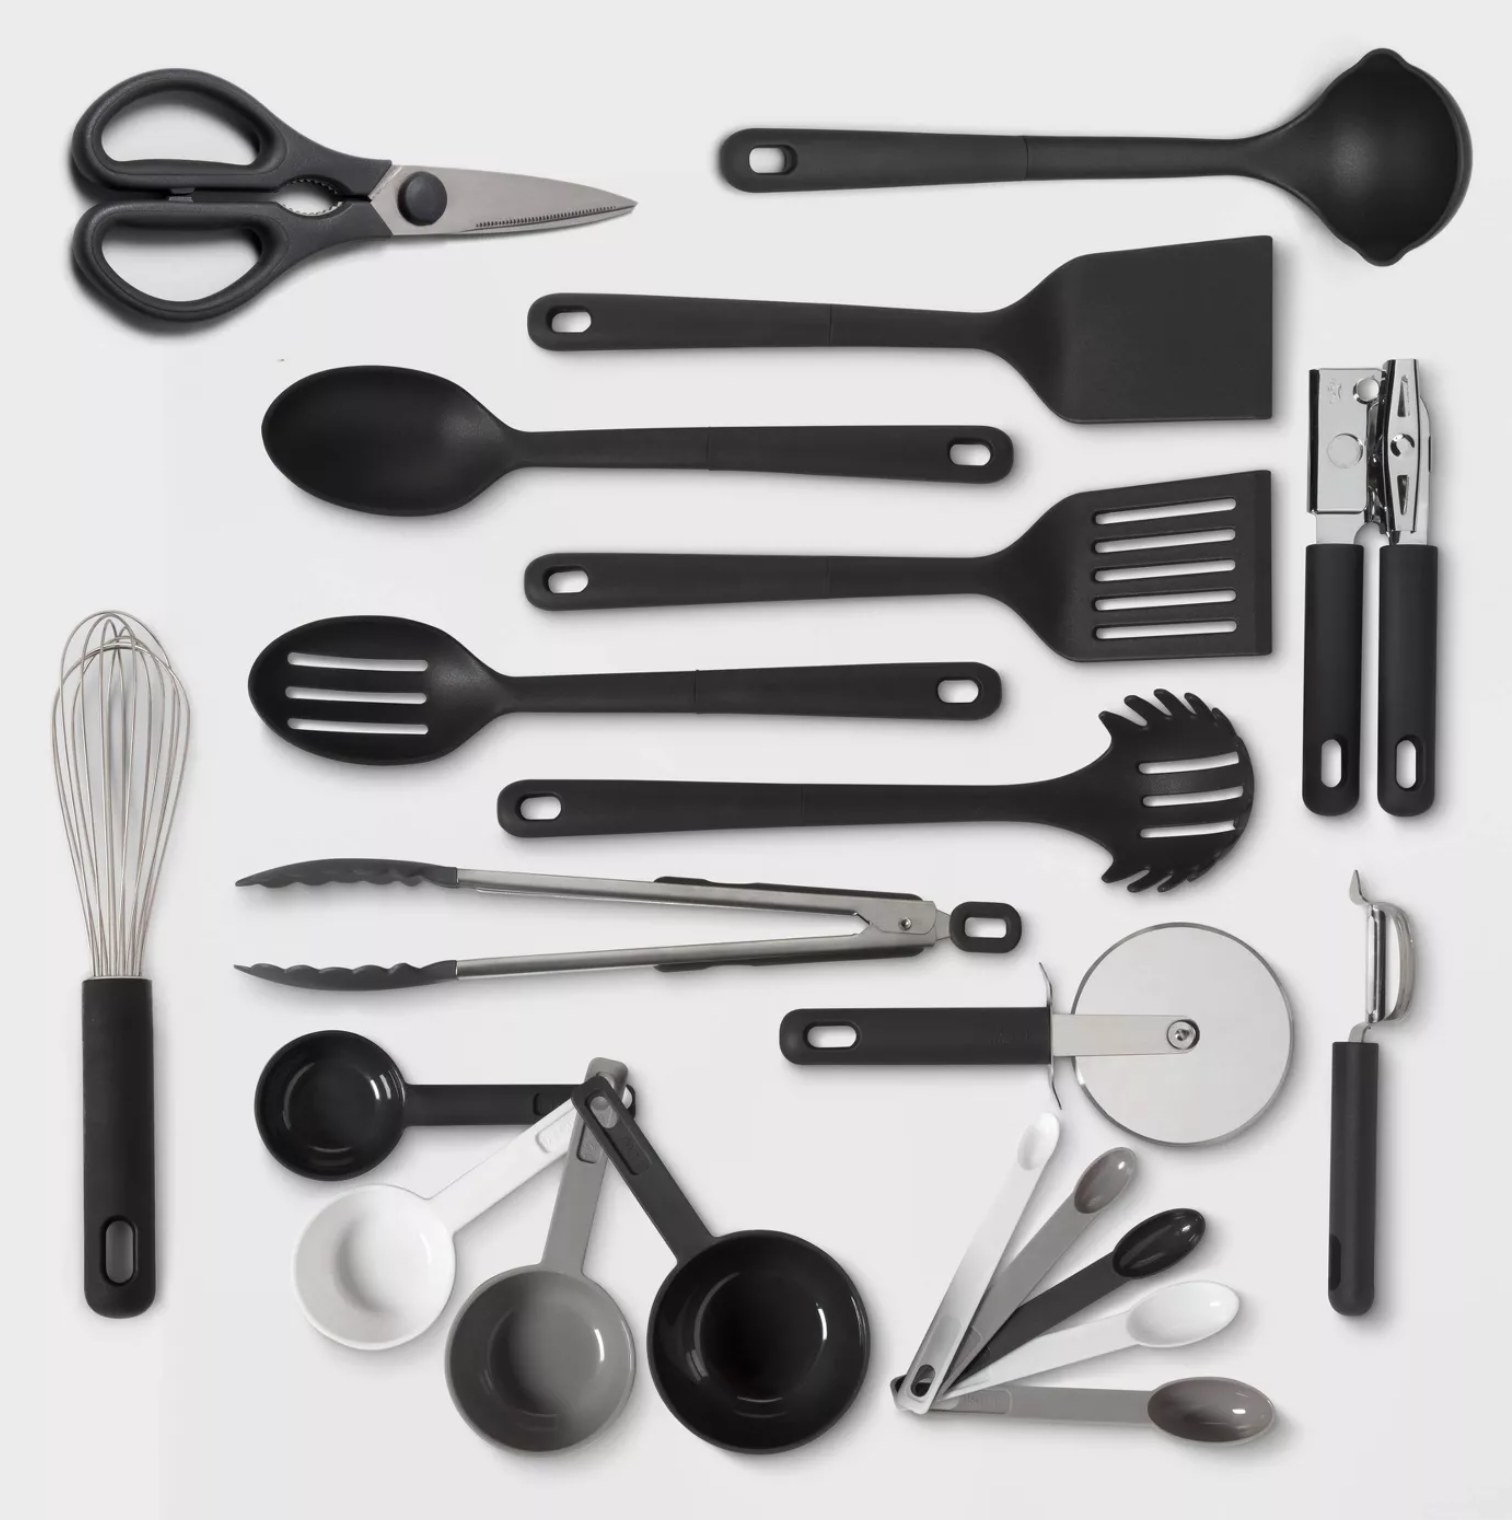 the full utensil set